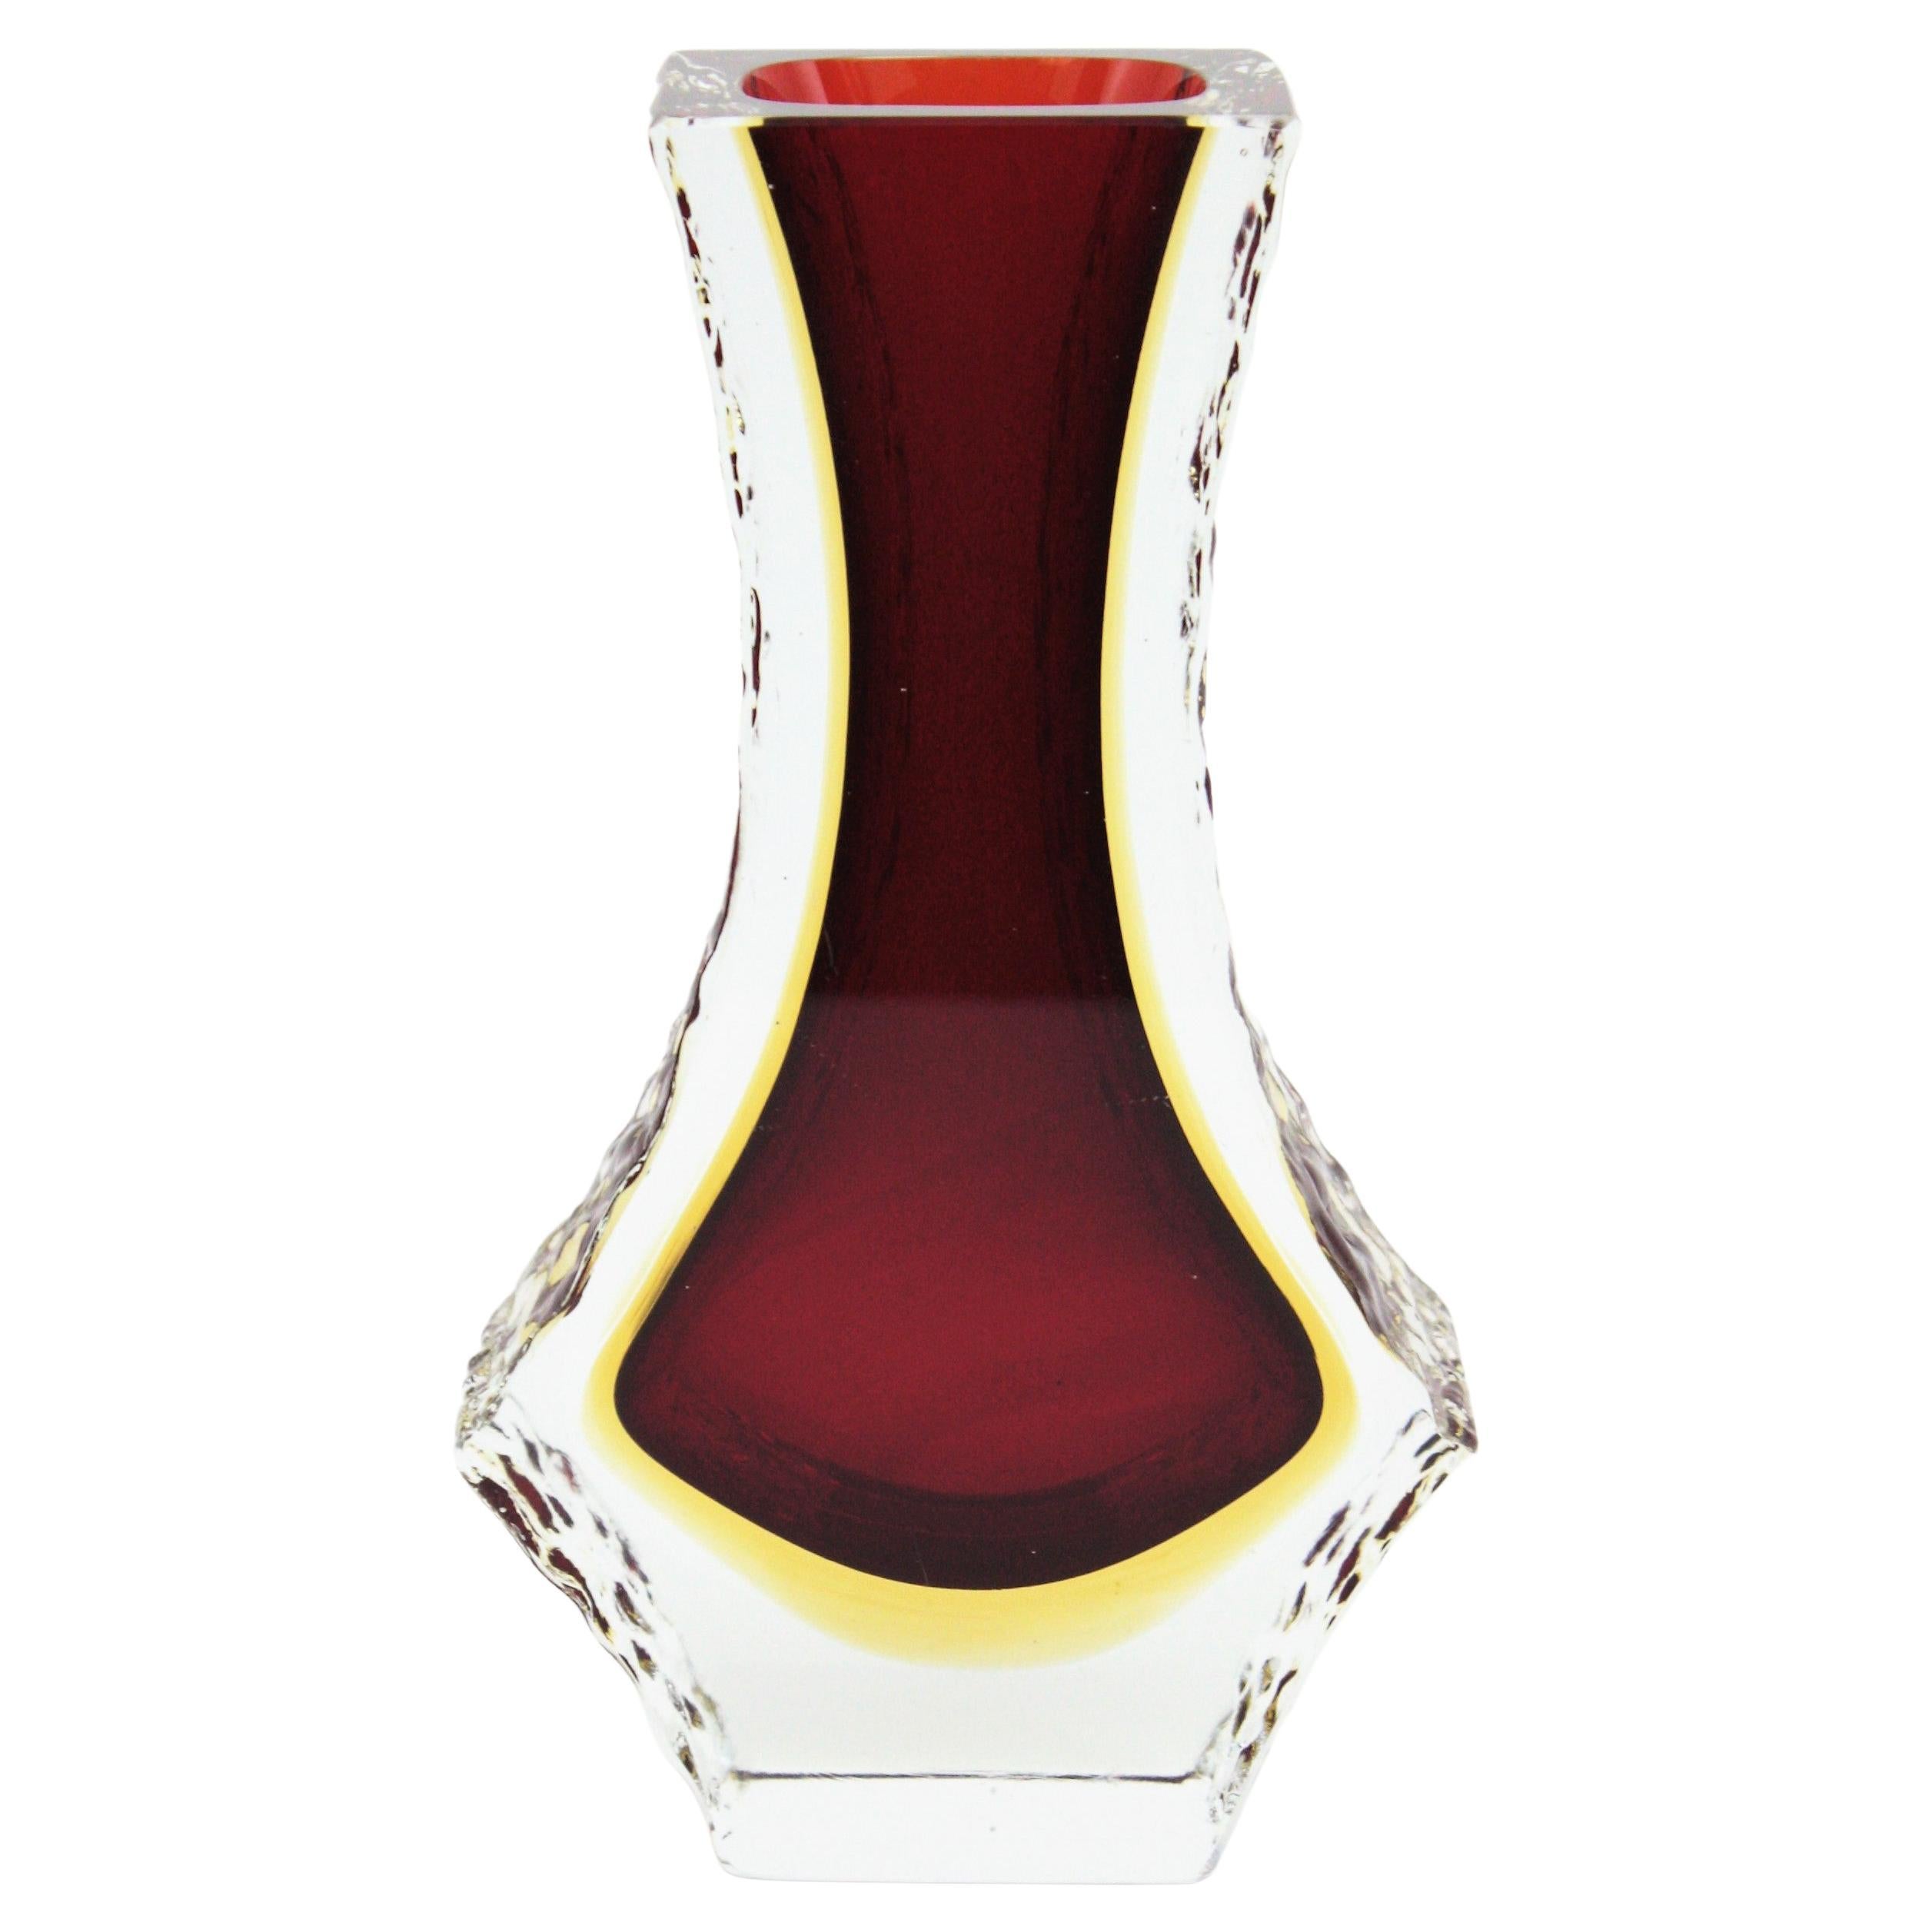 Vase aus facettiertem Muranoglas aus der Jahrhundertmitte mit strukturierten Eisglasrändern. Zuschreibung an Mandruzzato, Italien, 1960er Jahre.
Sommerso-Technik mit rotem Glas und einer gelben Schicht, die in klares Glas getaucht ist.
Sehr